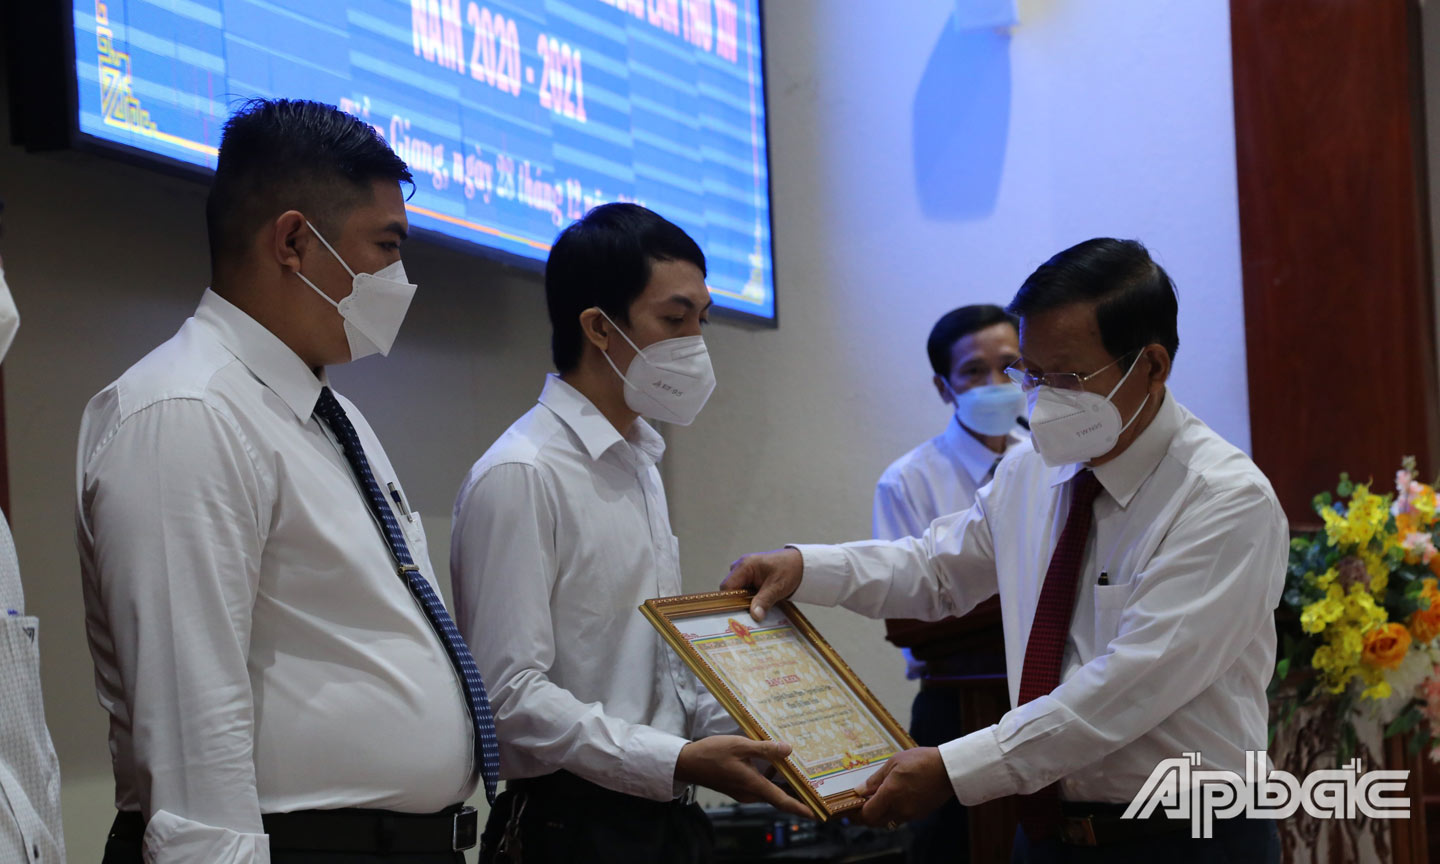 TS. Nguyễn Văn Khang, Chủ tịch Liên hiệp Hội trao giải cho các tác giả đoạt giải Hội thi cấp tỉnh lần thứ XIV, năm 2020 - 2021.